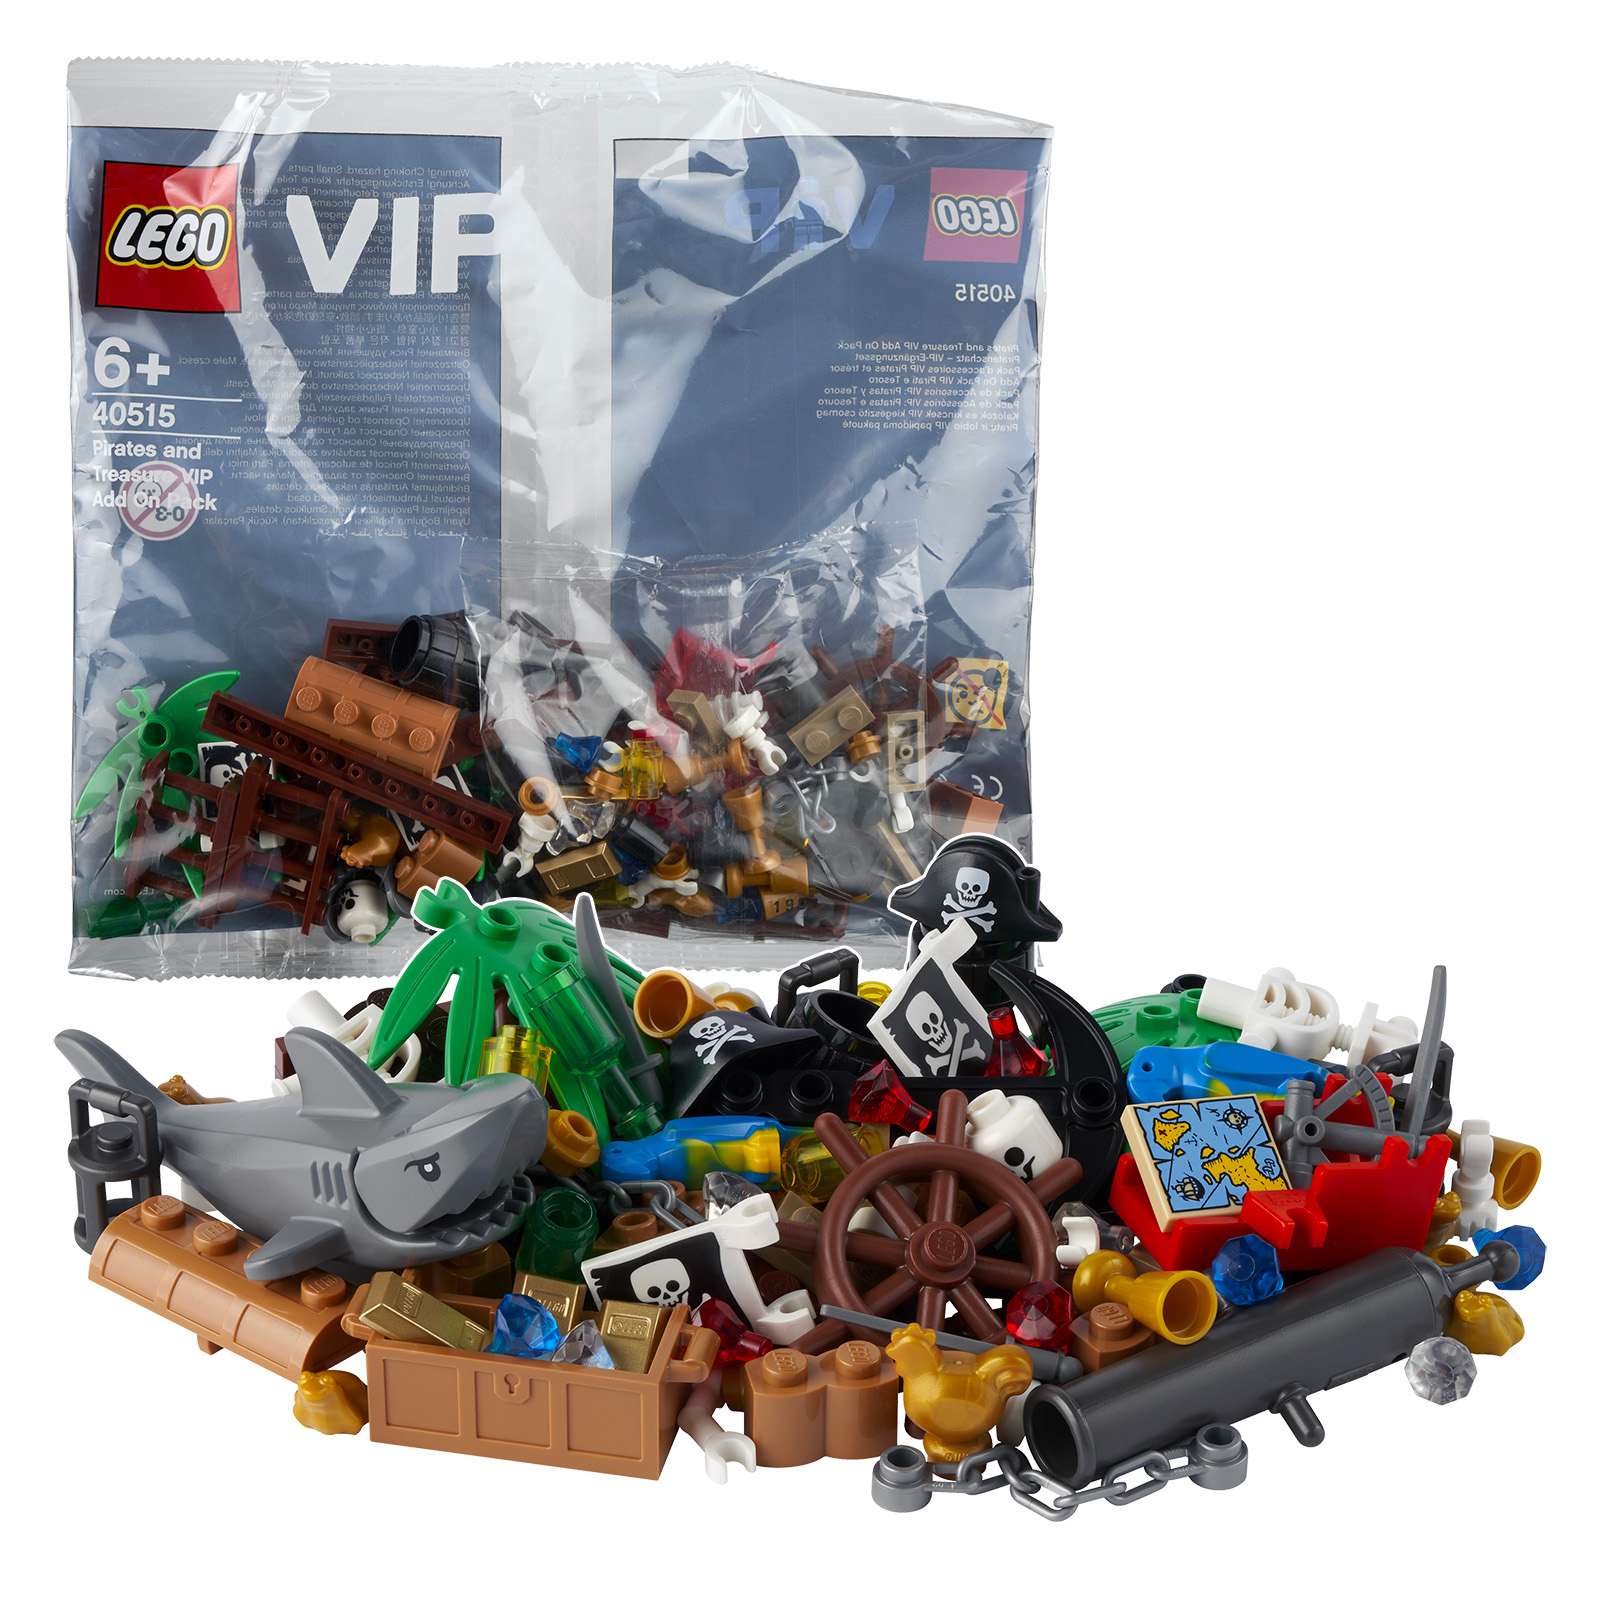 LEGO দোকানে: পলিব্যাগ 40515 পাইরেটস এবং ট্রেজার ভিআইপি অ্যাড অন প্যাক 50 € থেকে বিনামূল্যে